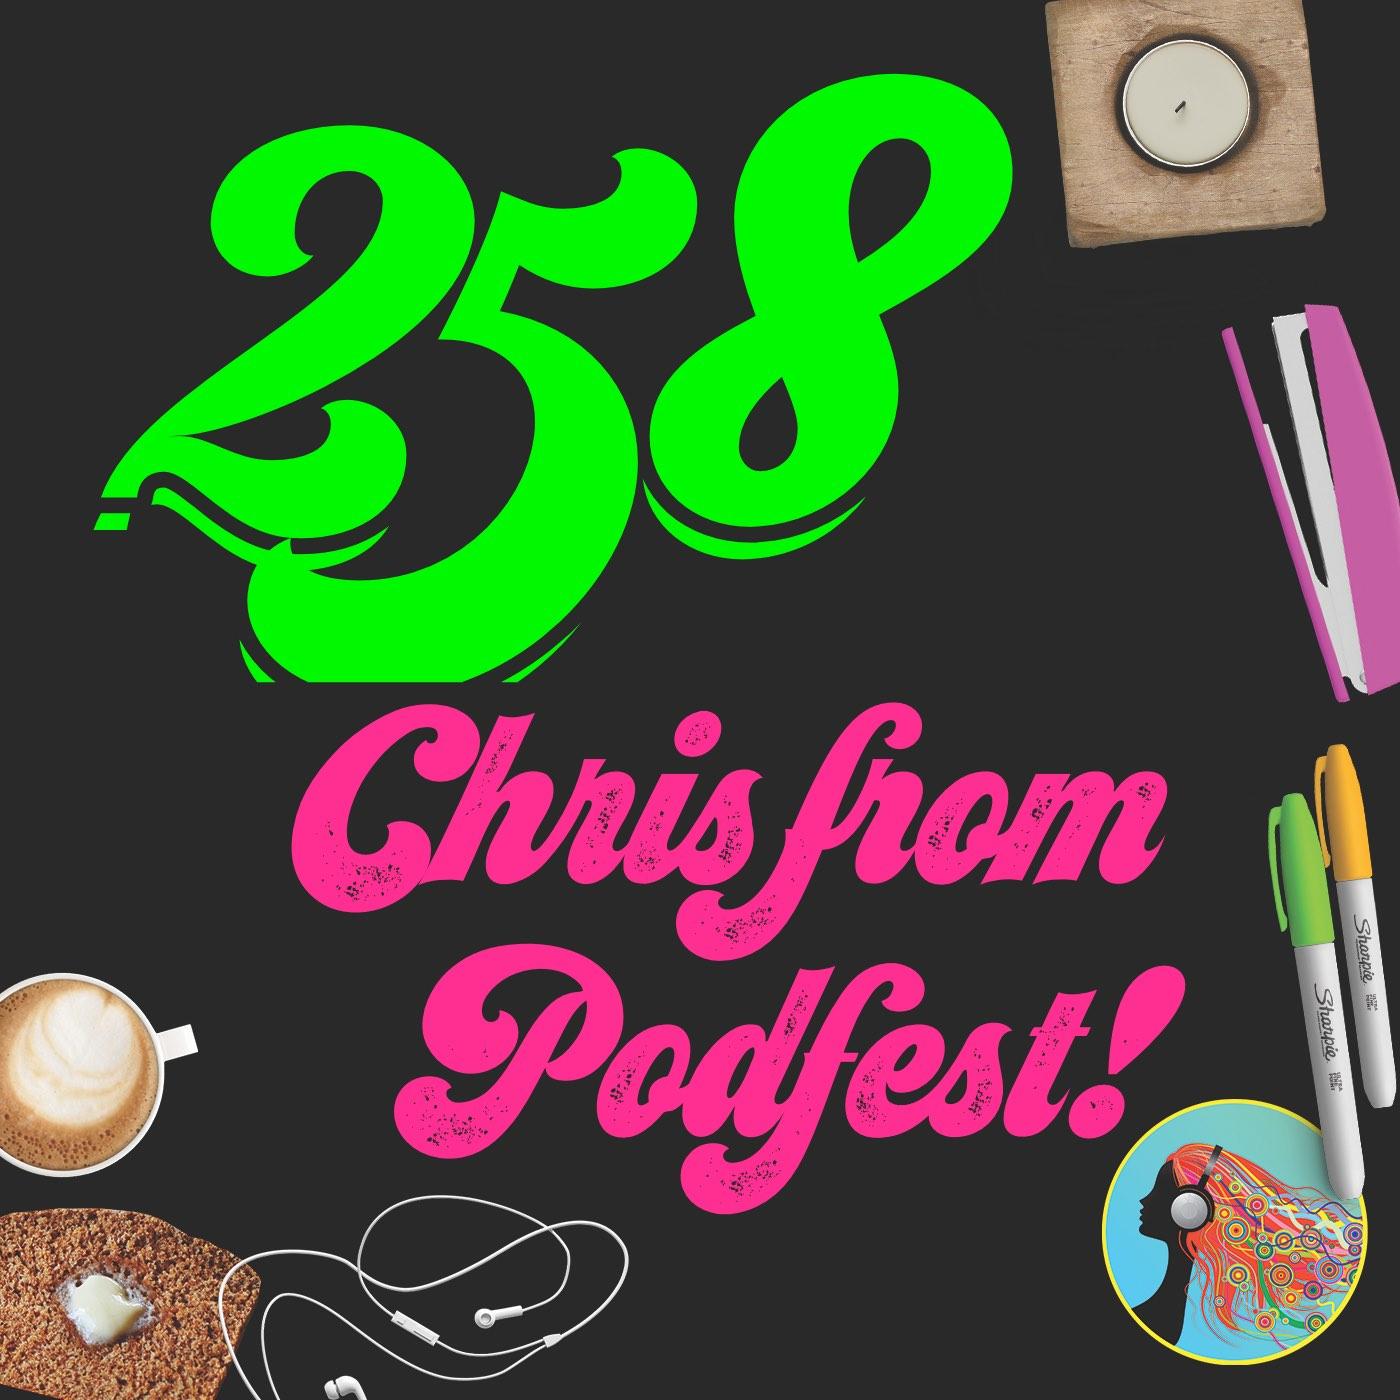 258 Chris from Podfest